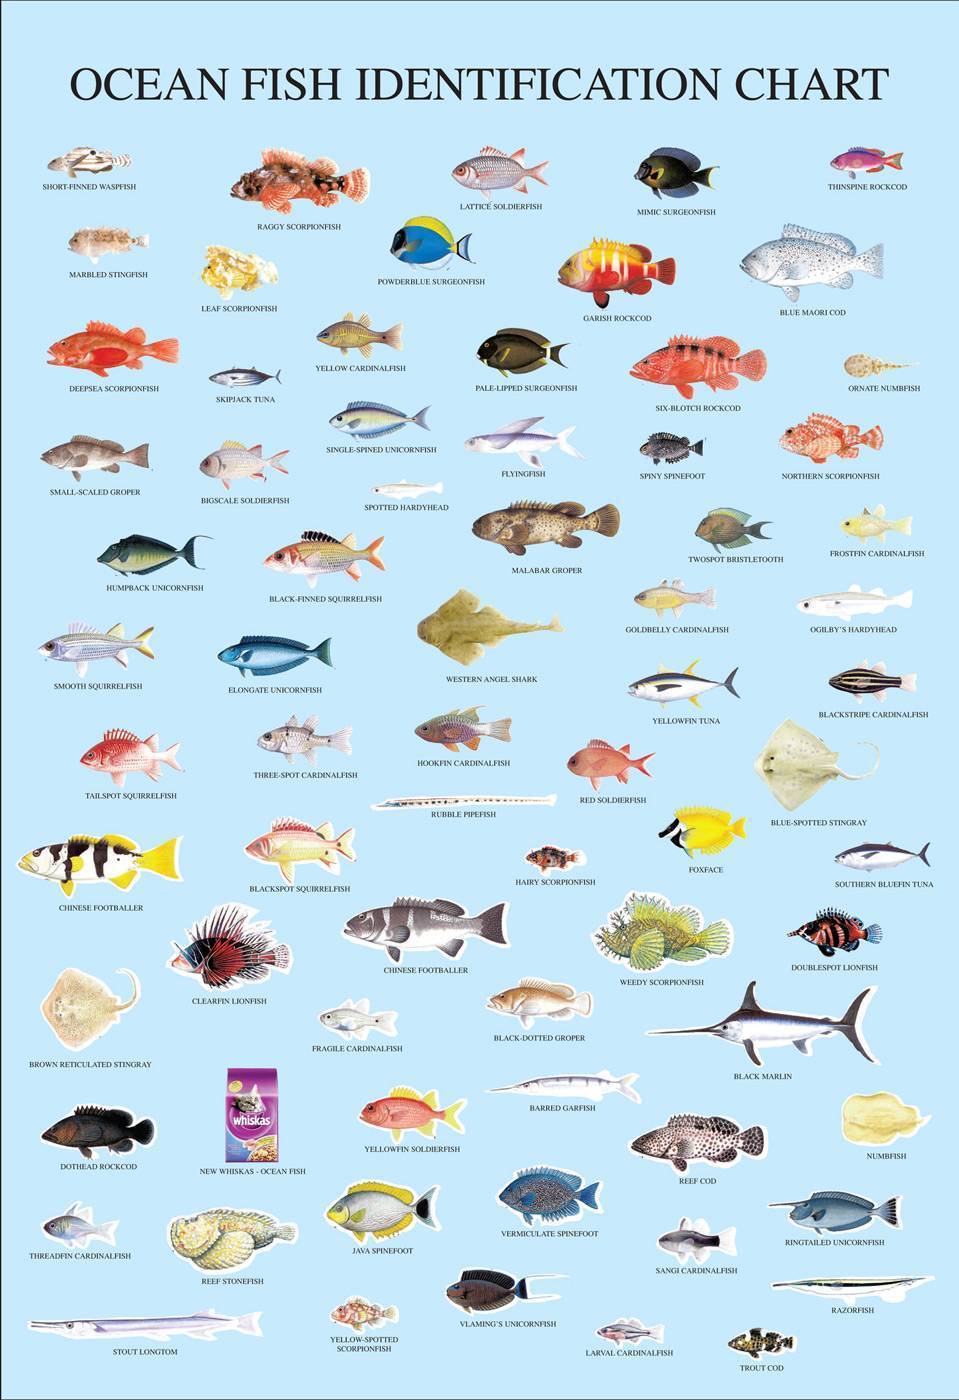 виды морских рыб с фото и названиями